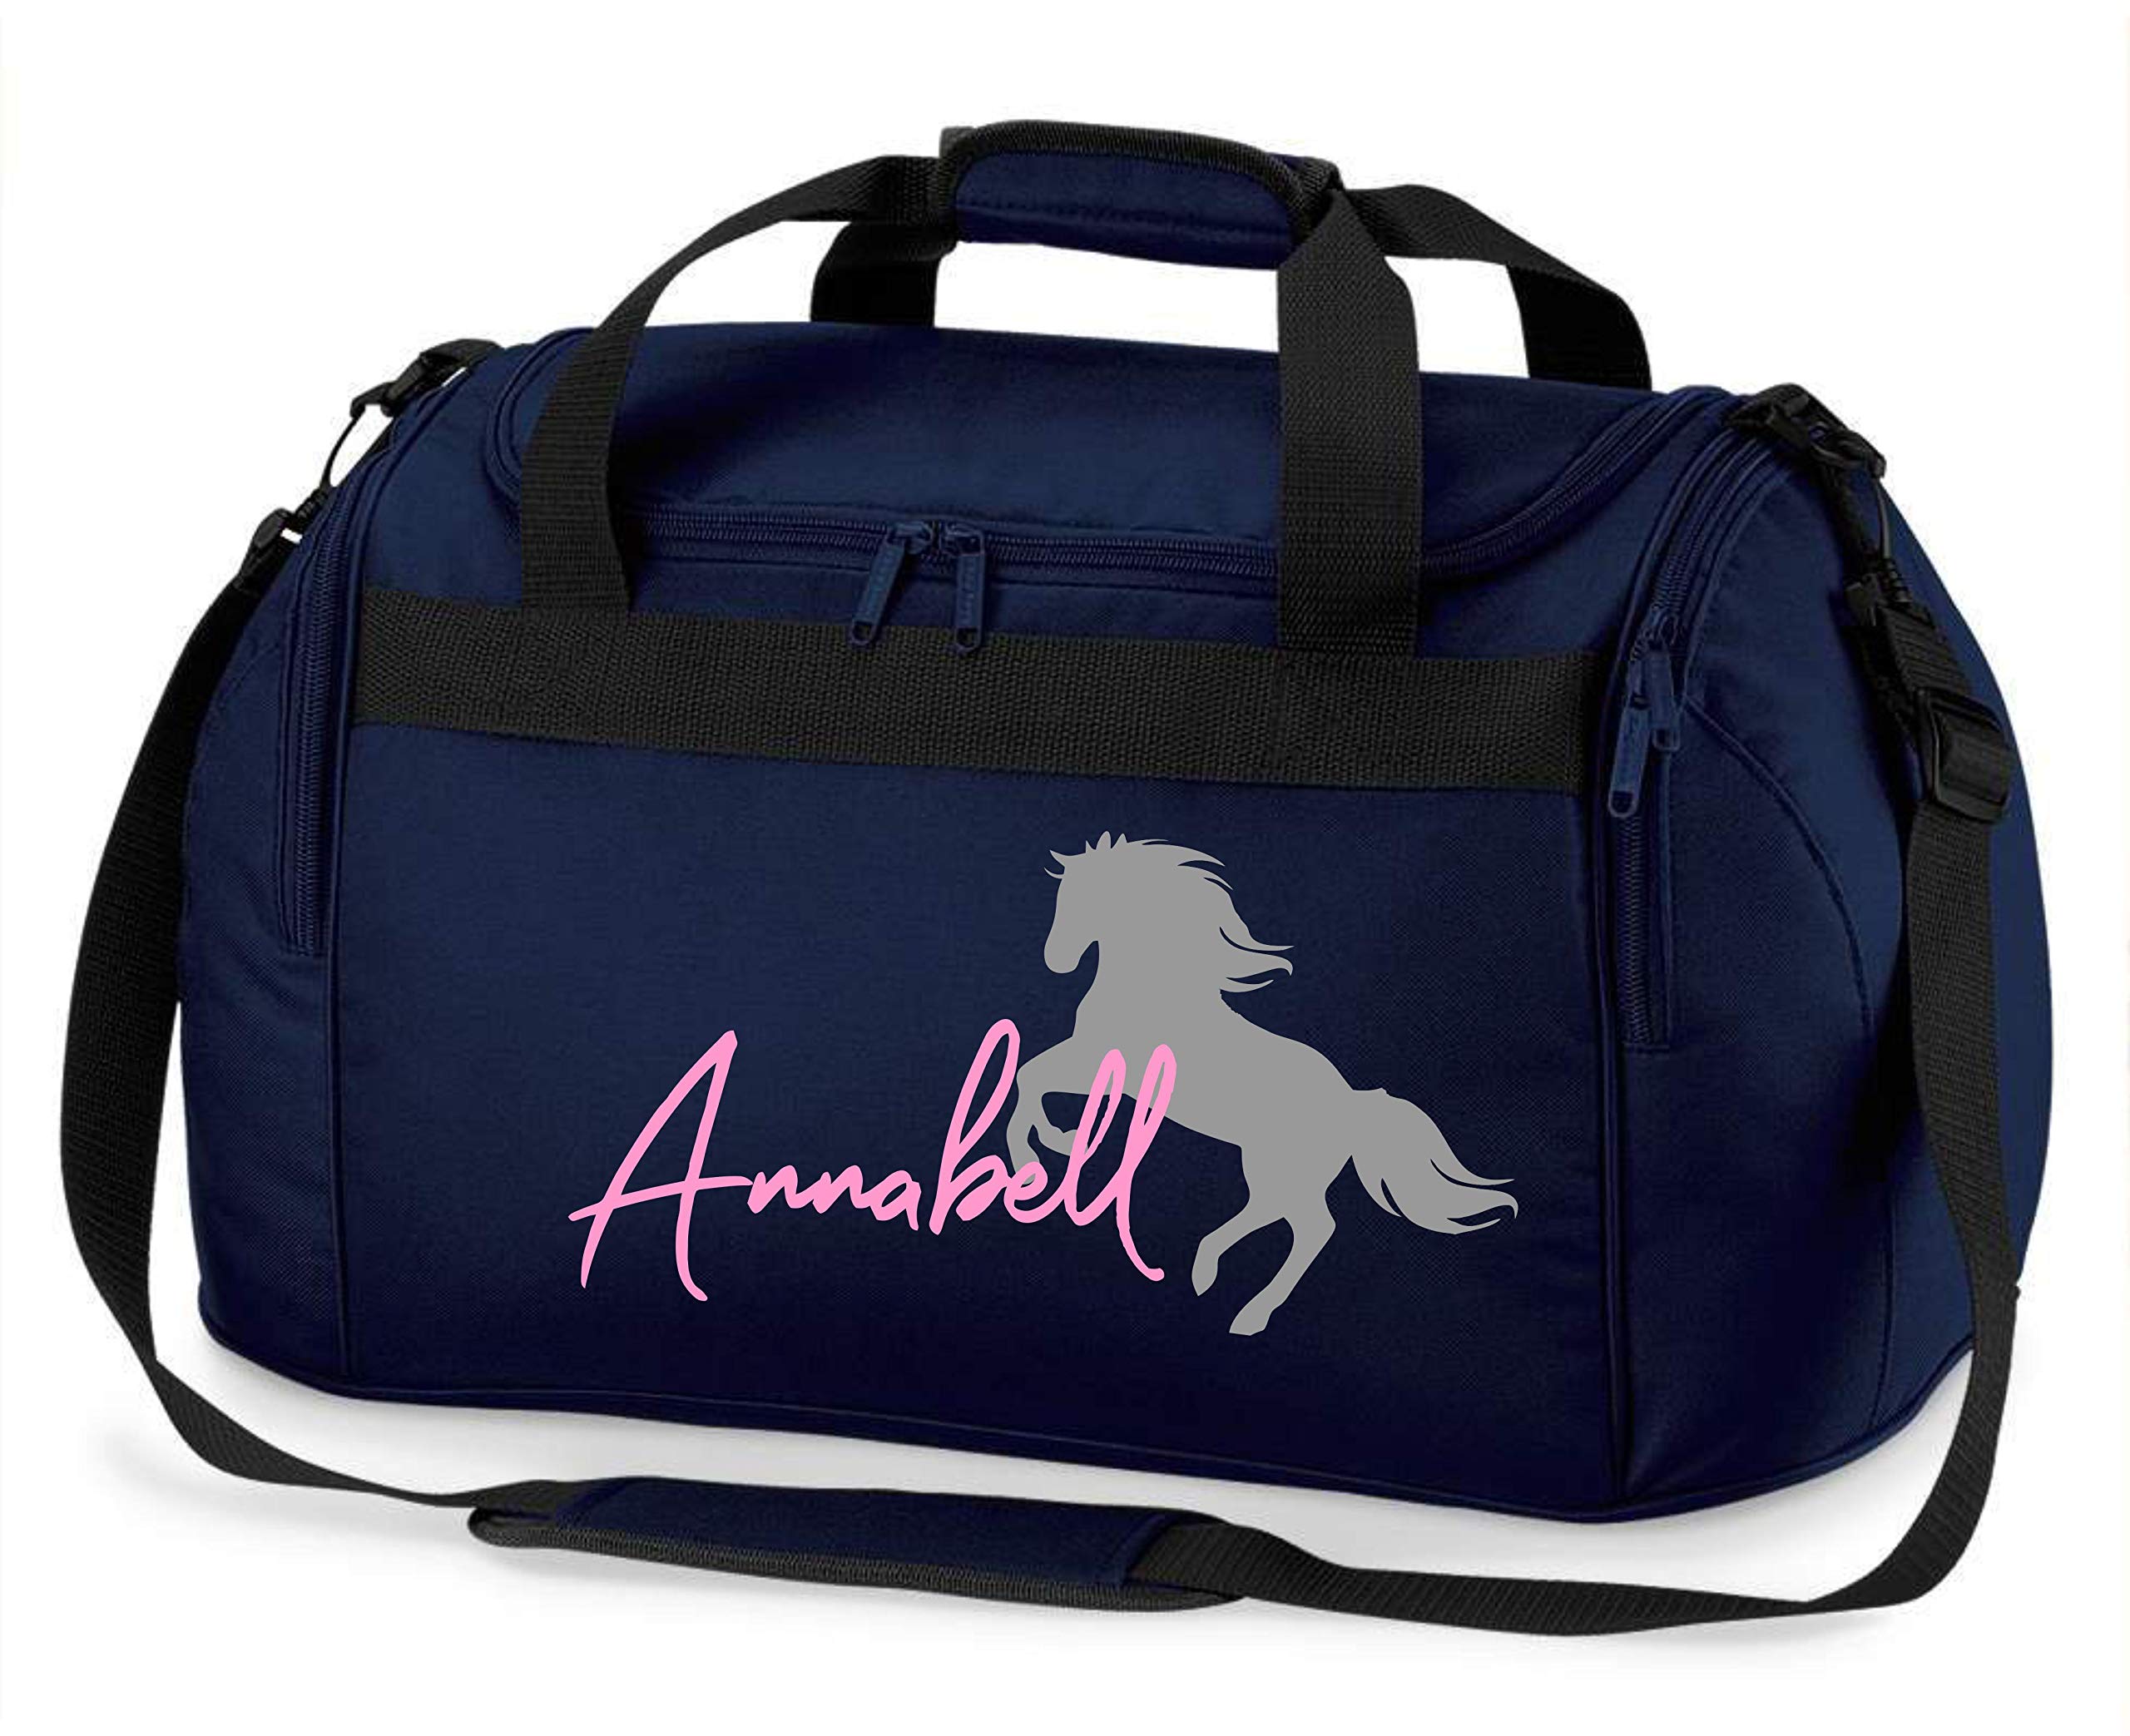 Reittasche mit Namensdruck personalisiert | Motiv aufsteigendes Pferd mit Name | Trage- und Sporttasche für Mädchen zum Reiten in vielen Farben verfügbar (dunkelblau) 54 x 28 x 25 cm